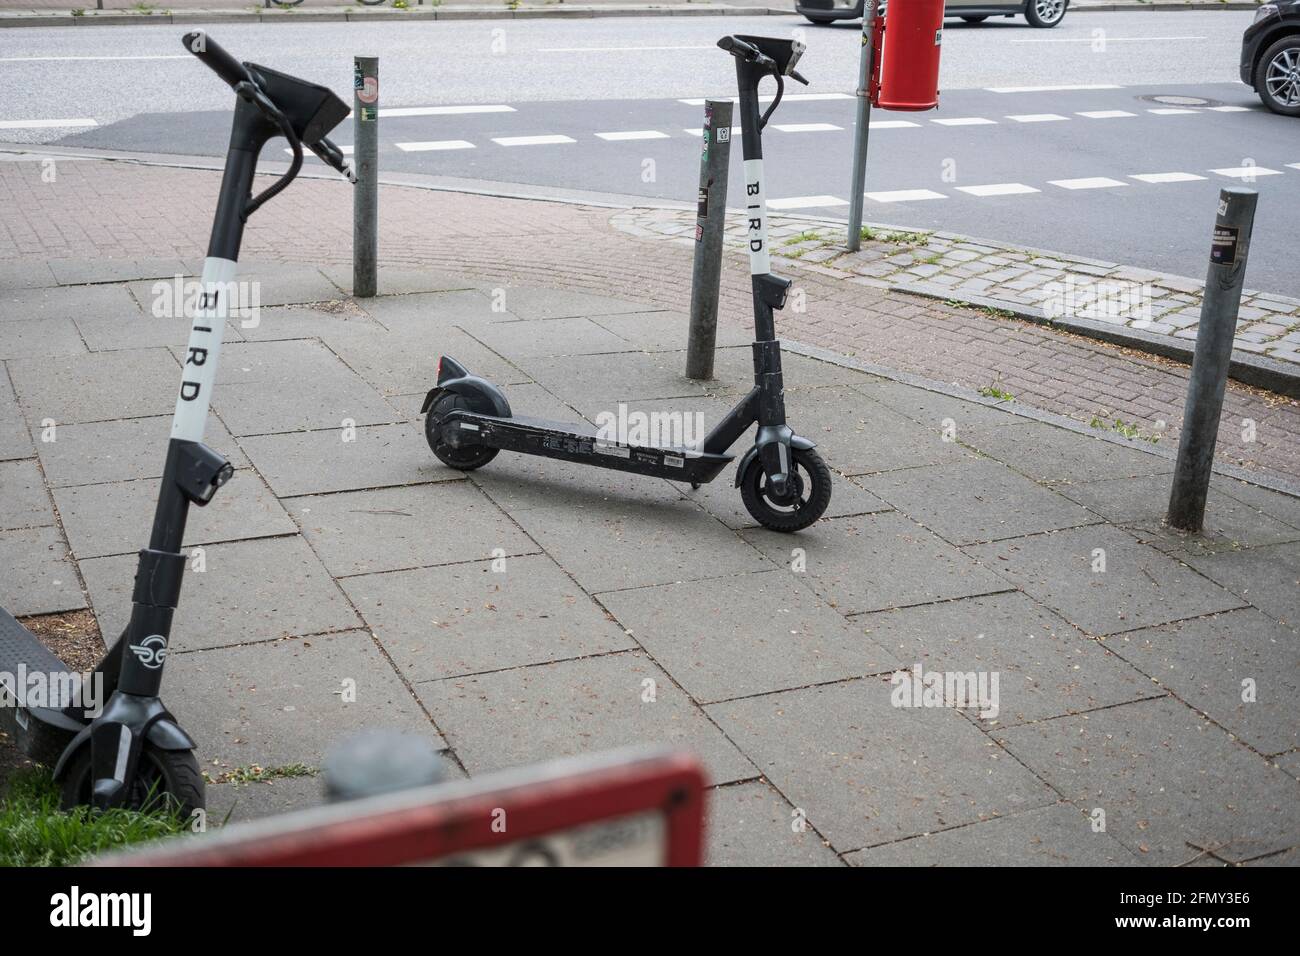 Ärgerlich: auf Fußweg abgestellte e-scooter. Stock Photo